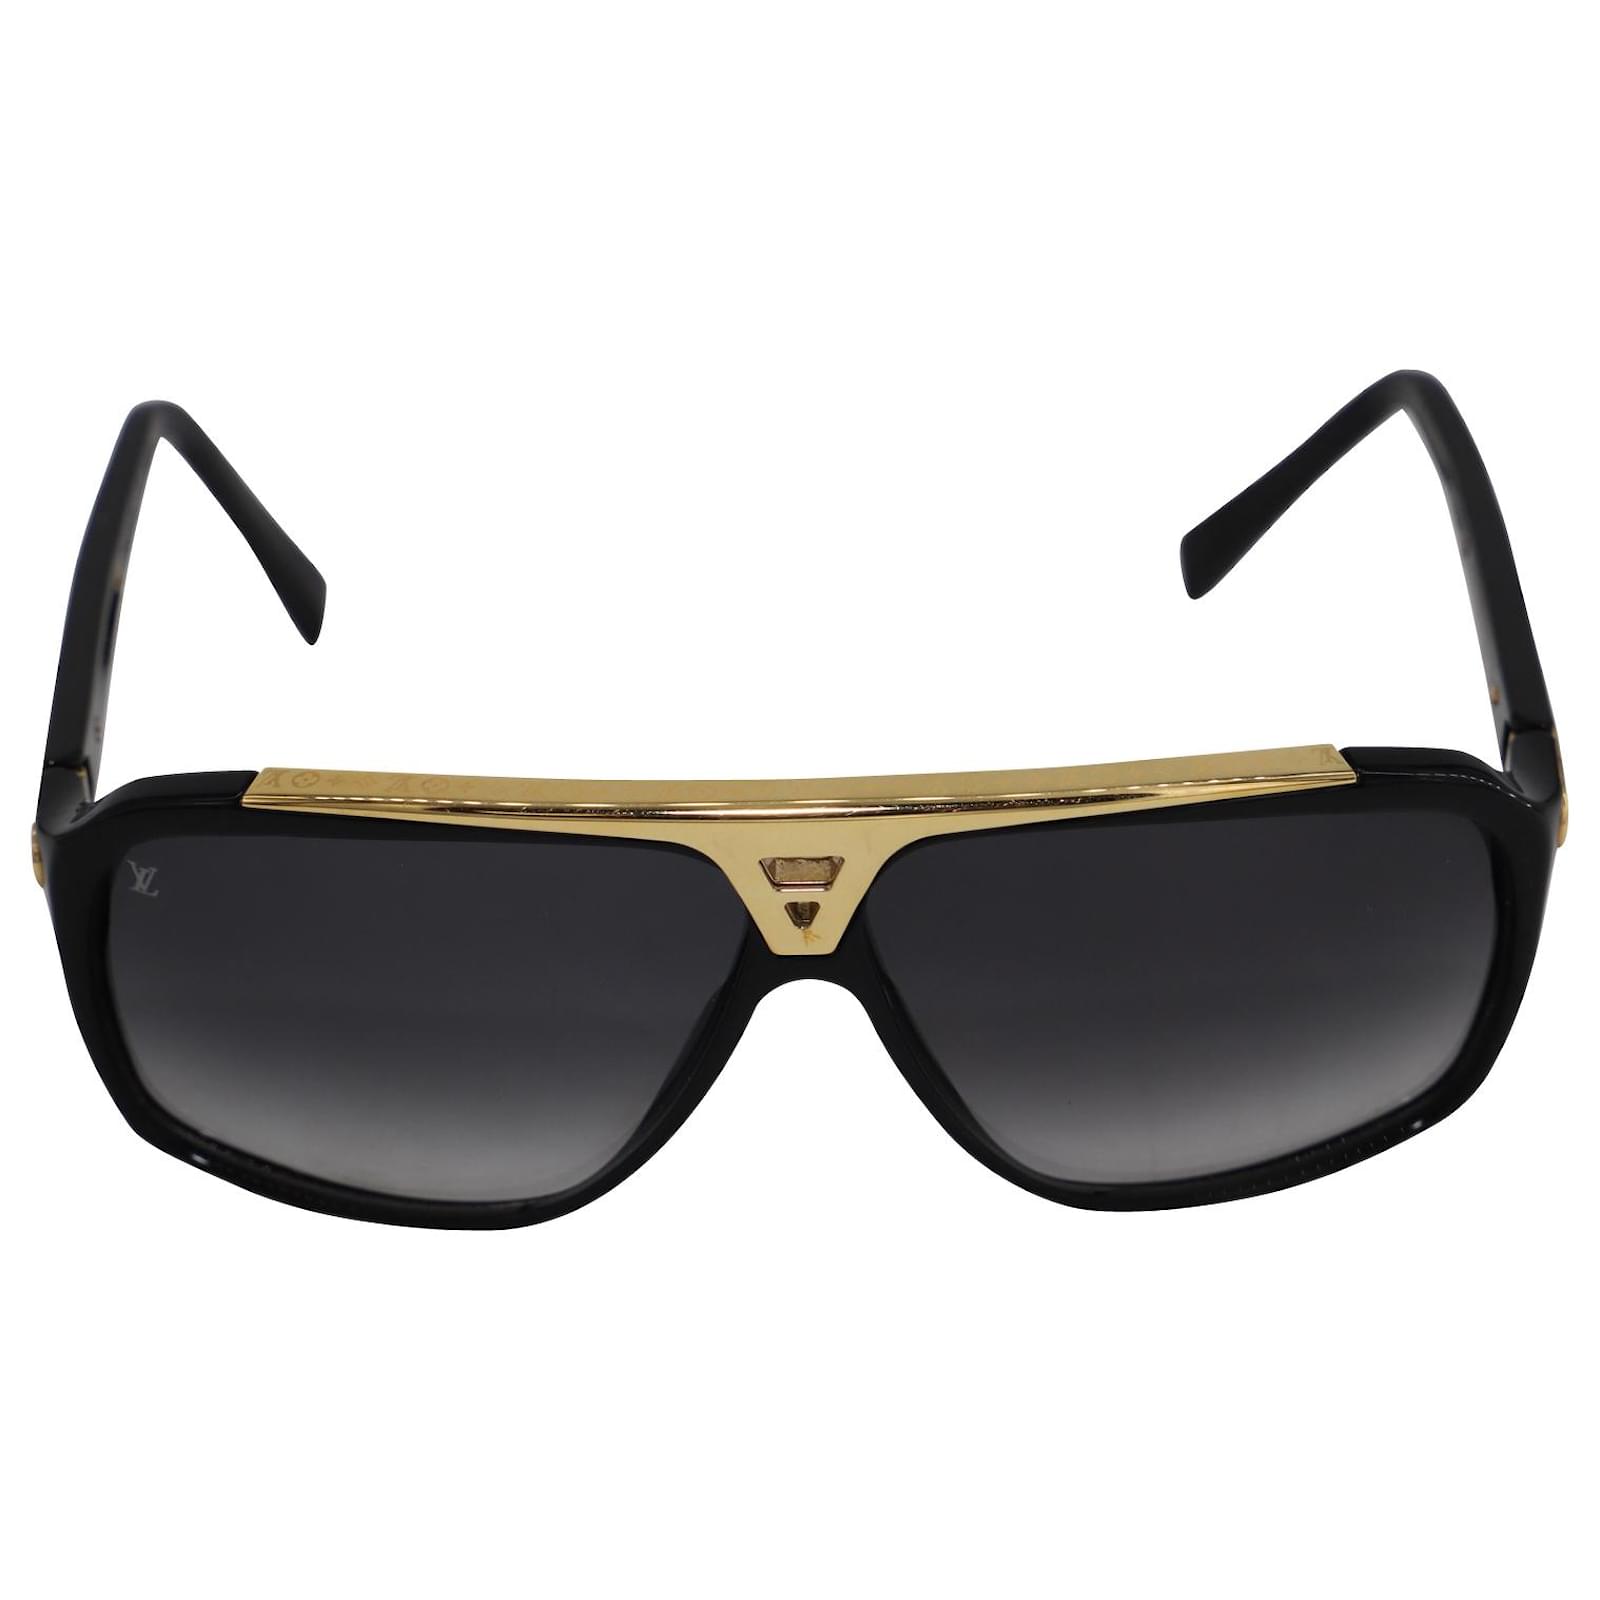 Preços baixos em Óculos de Sol de designer para homens Louis Vuitton